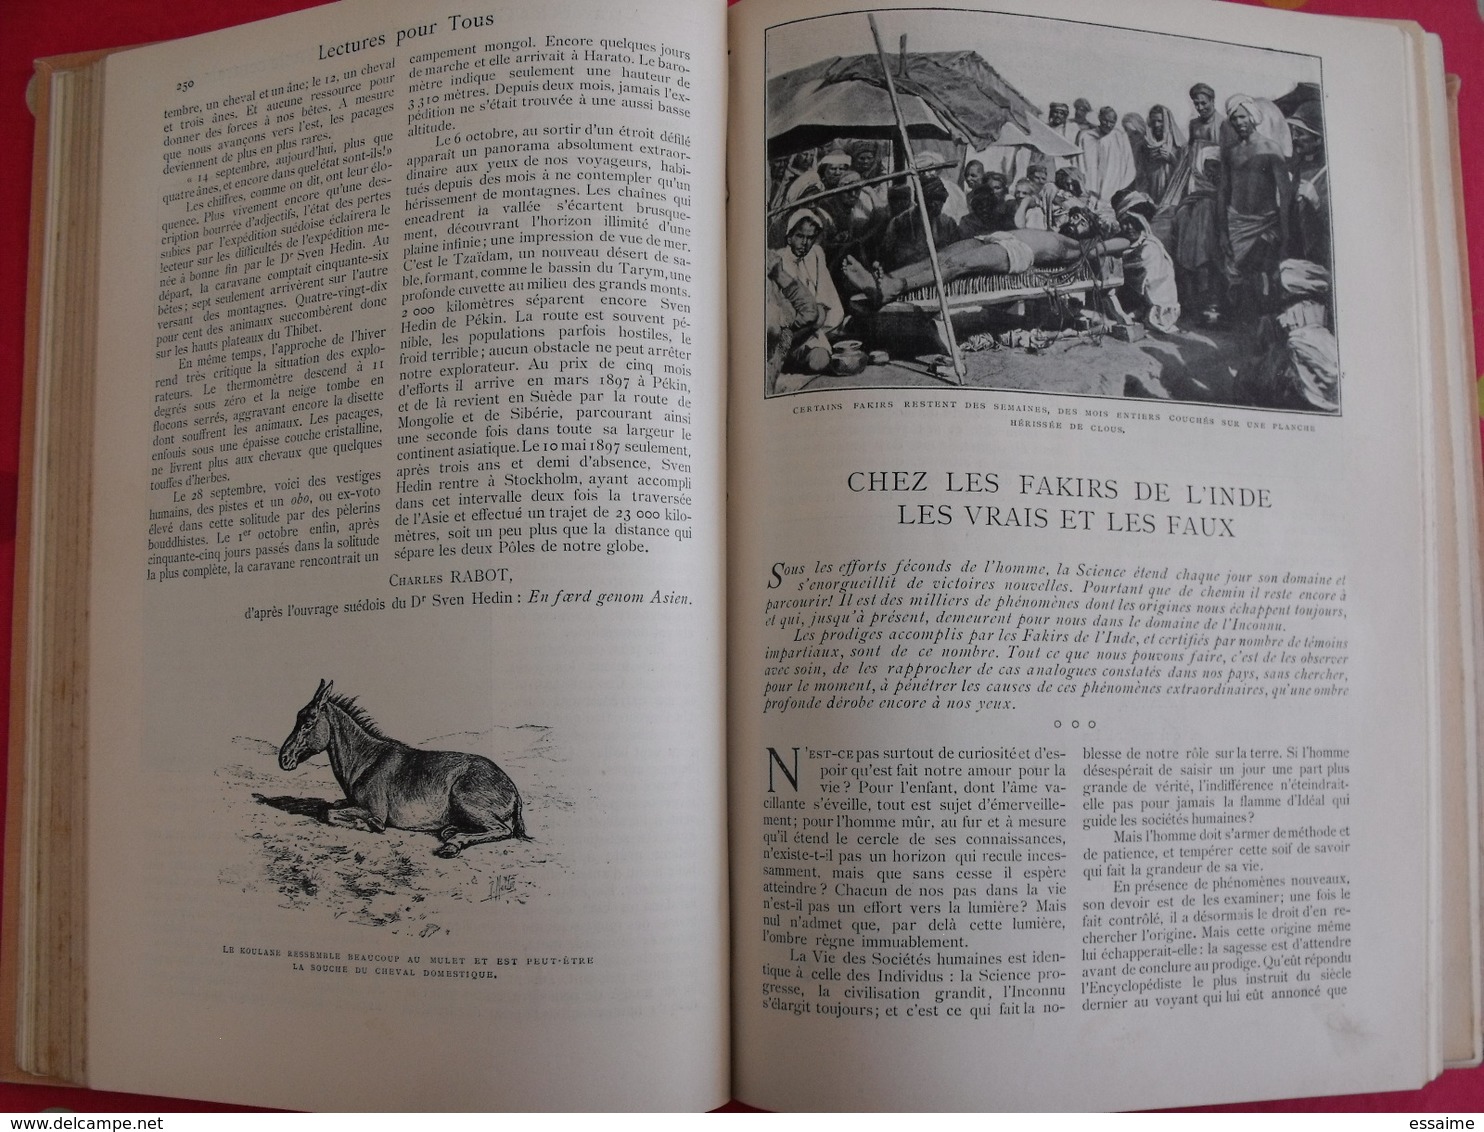 Lectures pour tous 1898-1899. Hachette reliure éditeur.  thibet torture panhard nézière japon shah perse chine tatouage